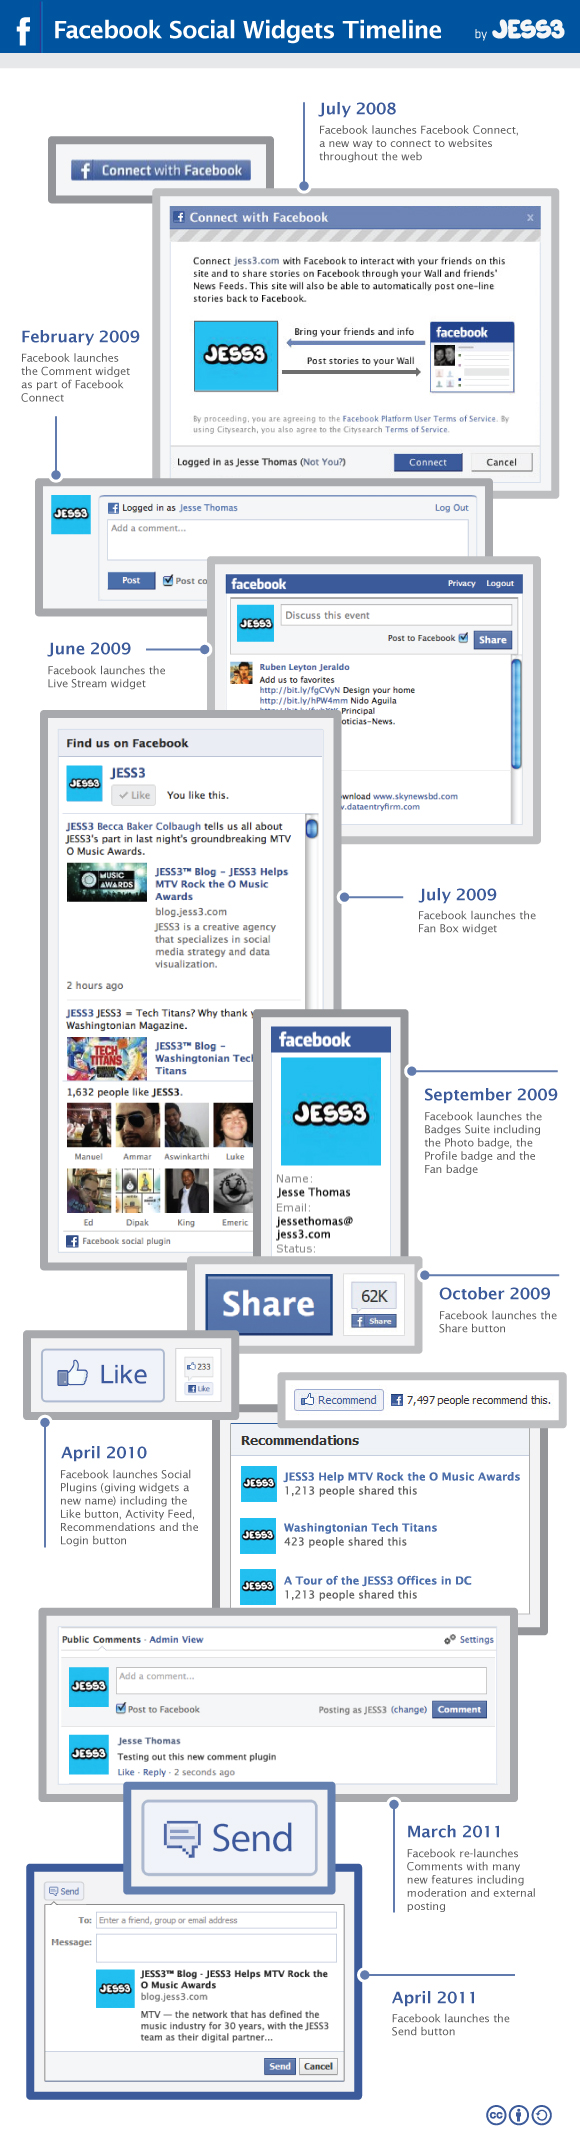 Les plugins sociaux Facebook de 2008 à nos jours